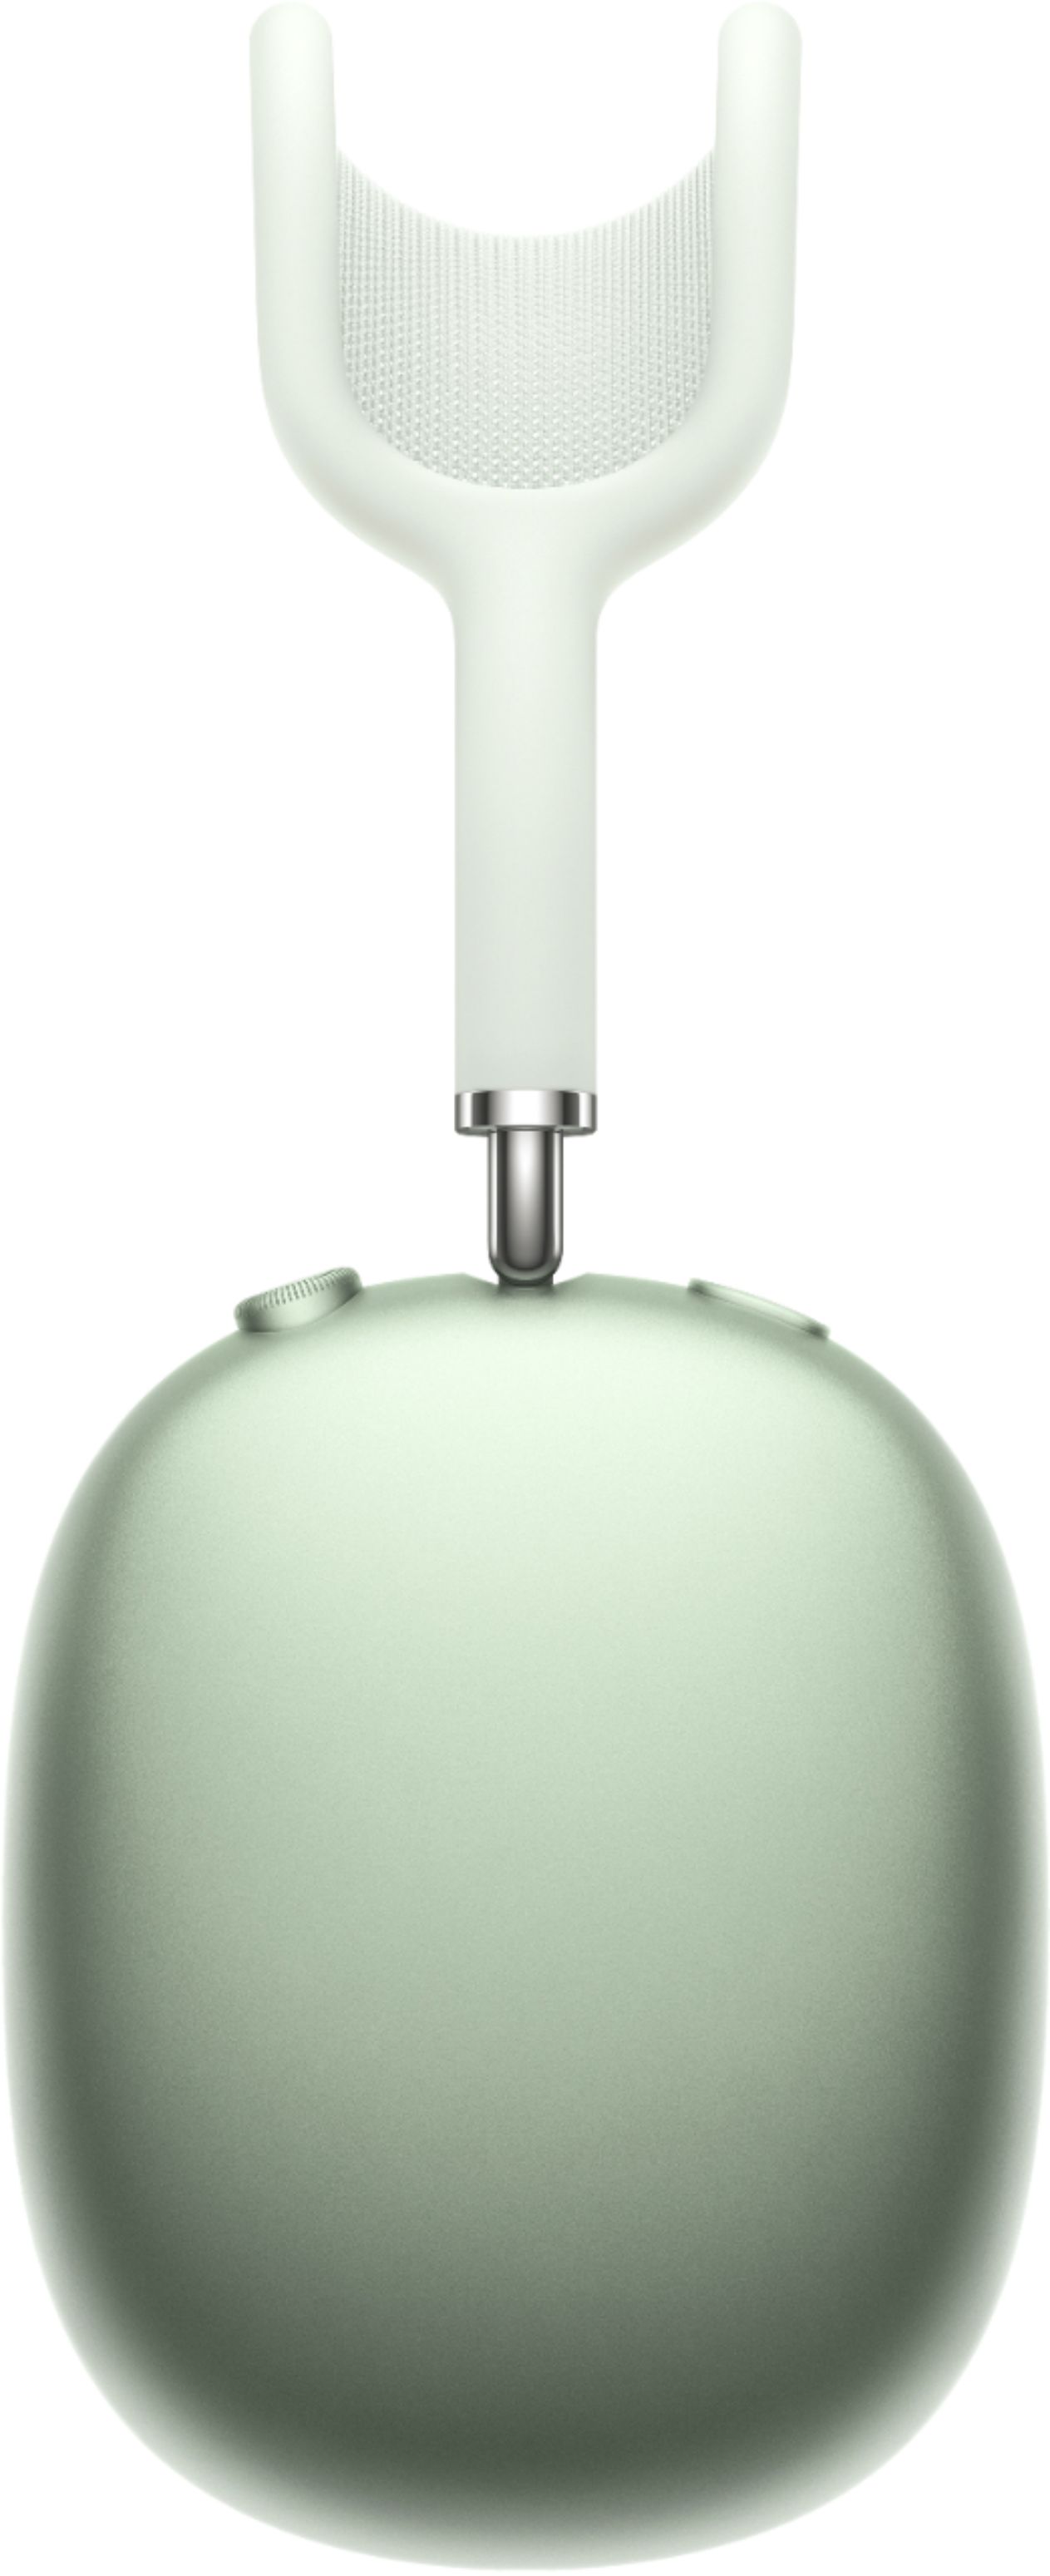 Apple AirPods Max, color verde (reacondicionados) 